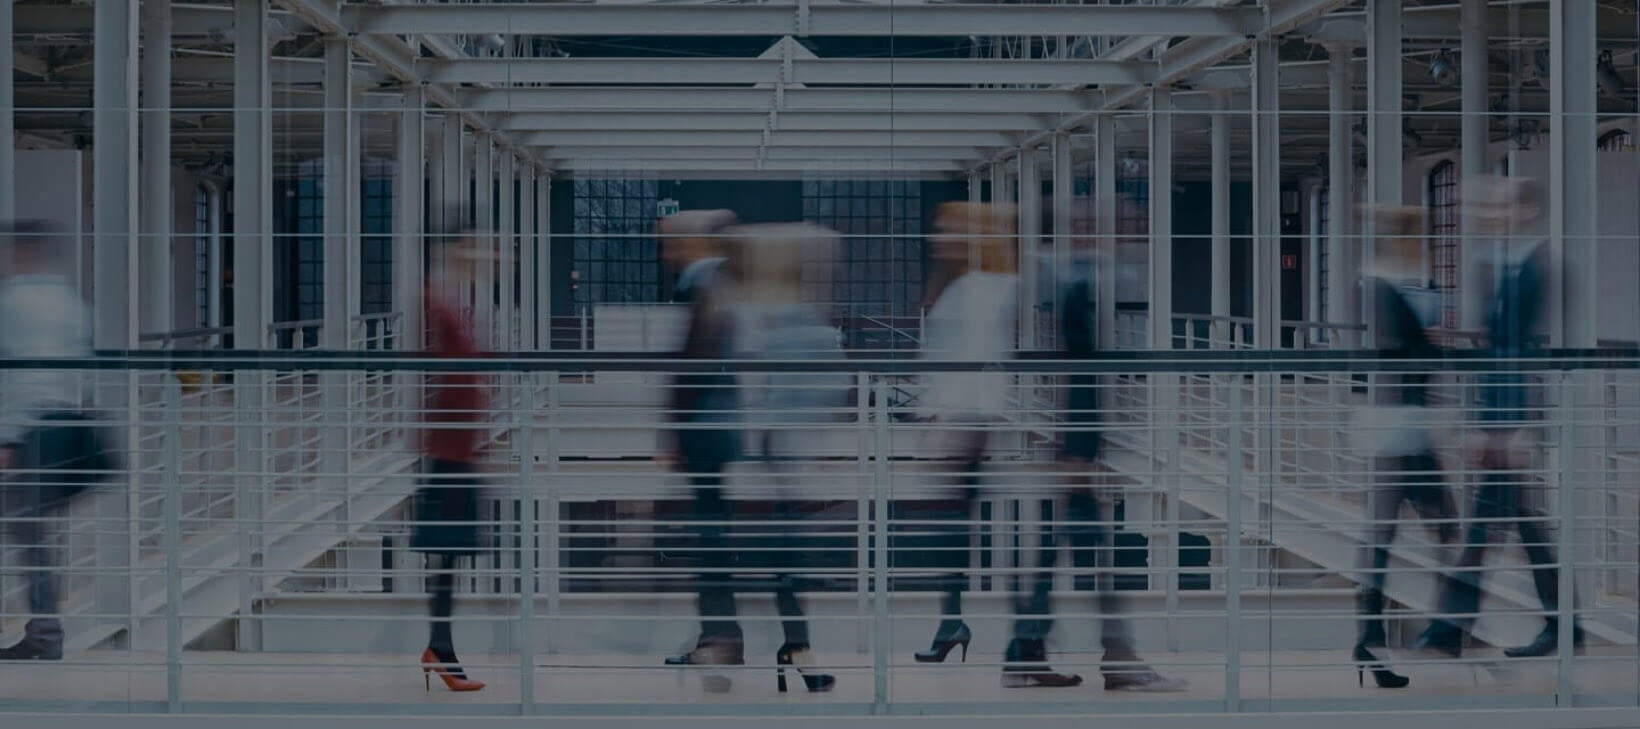 Slika hodnika iz jeklene bele konstrukcije, ki ima jekleno belo ograjo. Na hodniku zamegljene slike sedmih poslovno oblečenih ljudi, ki se premikajo. 